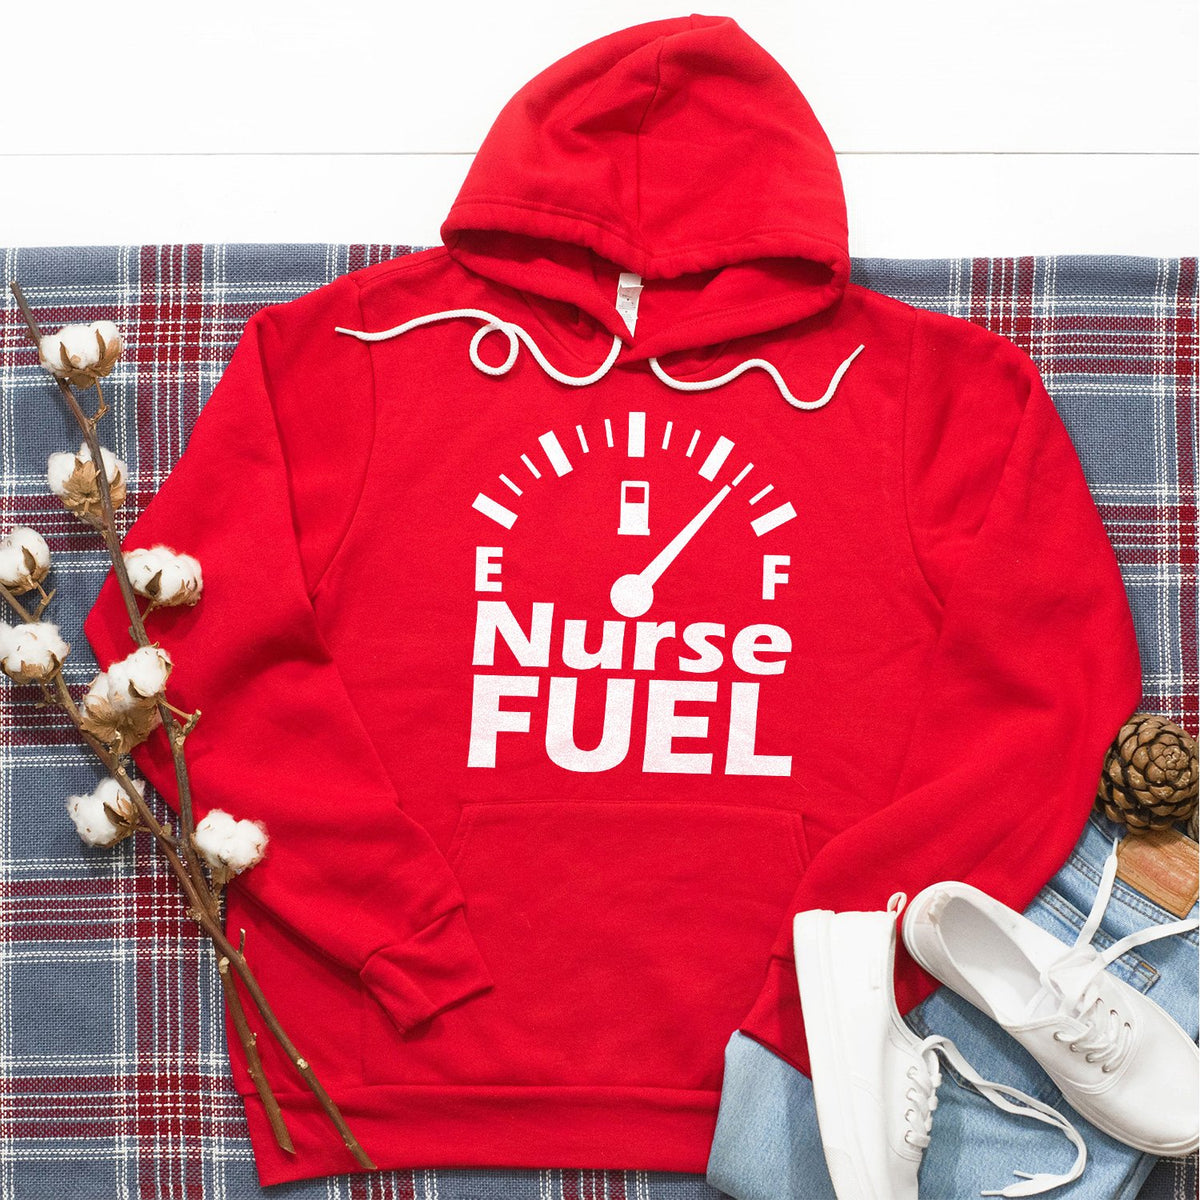 Nurse Fuel - Hoodie Sweatshirt